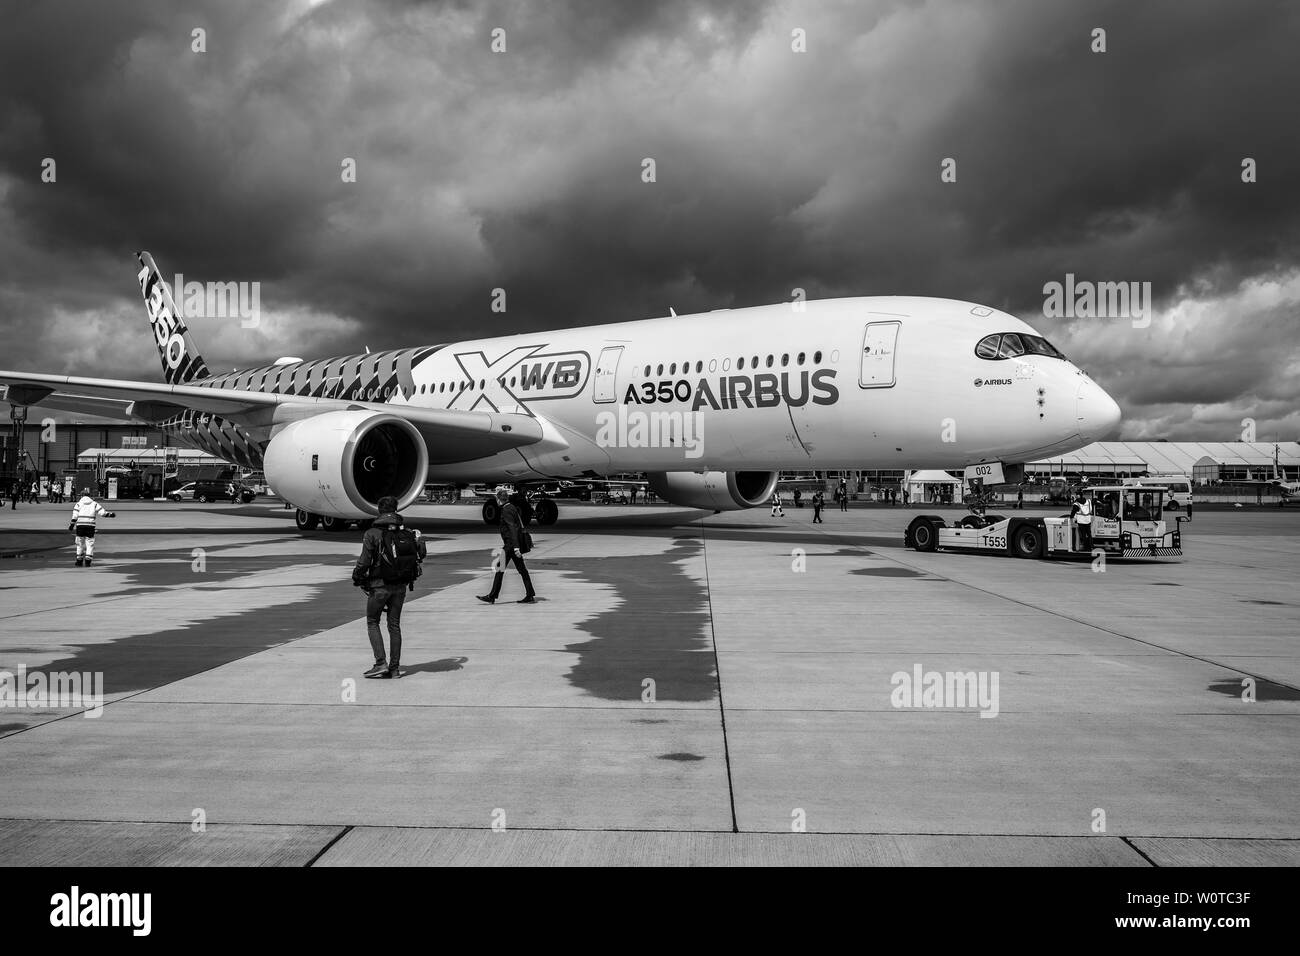 BERLIN, DEUTSCHLAND - 26 April 2018: Wide-body Jet Airliner Airbus A350 XWB auf dem Flugplatz. Schwarz und Weiß. Ausstellung die ILA Berlin Air Show 2018 Stockfoto